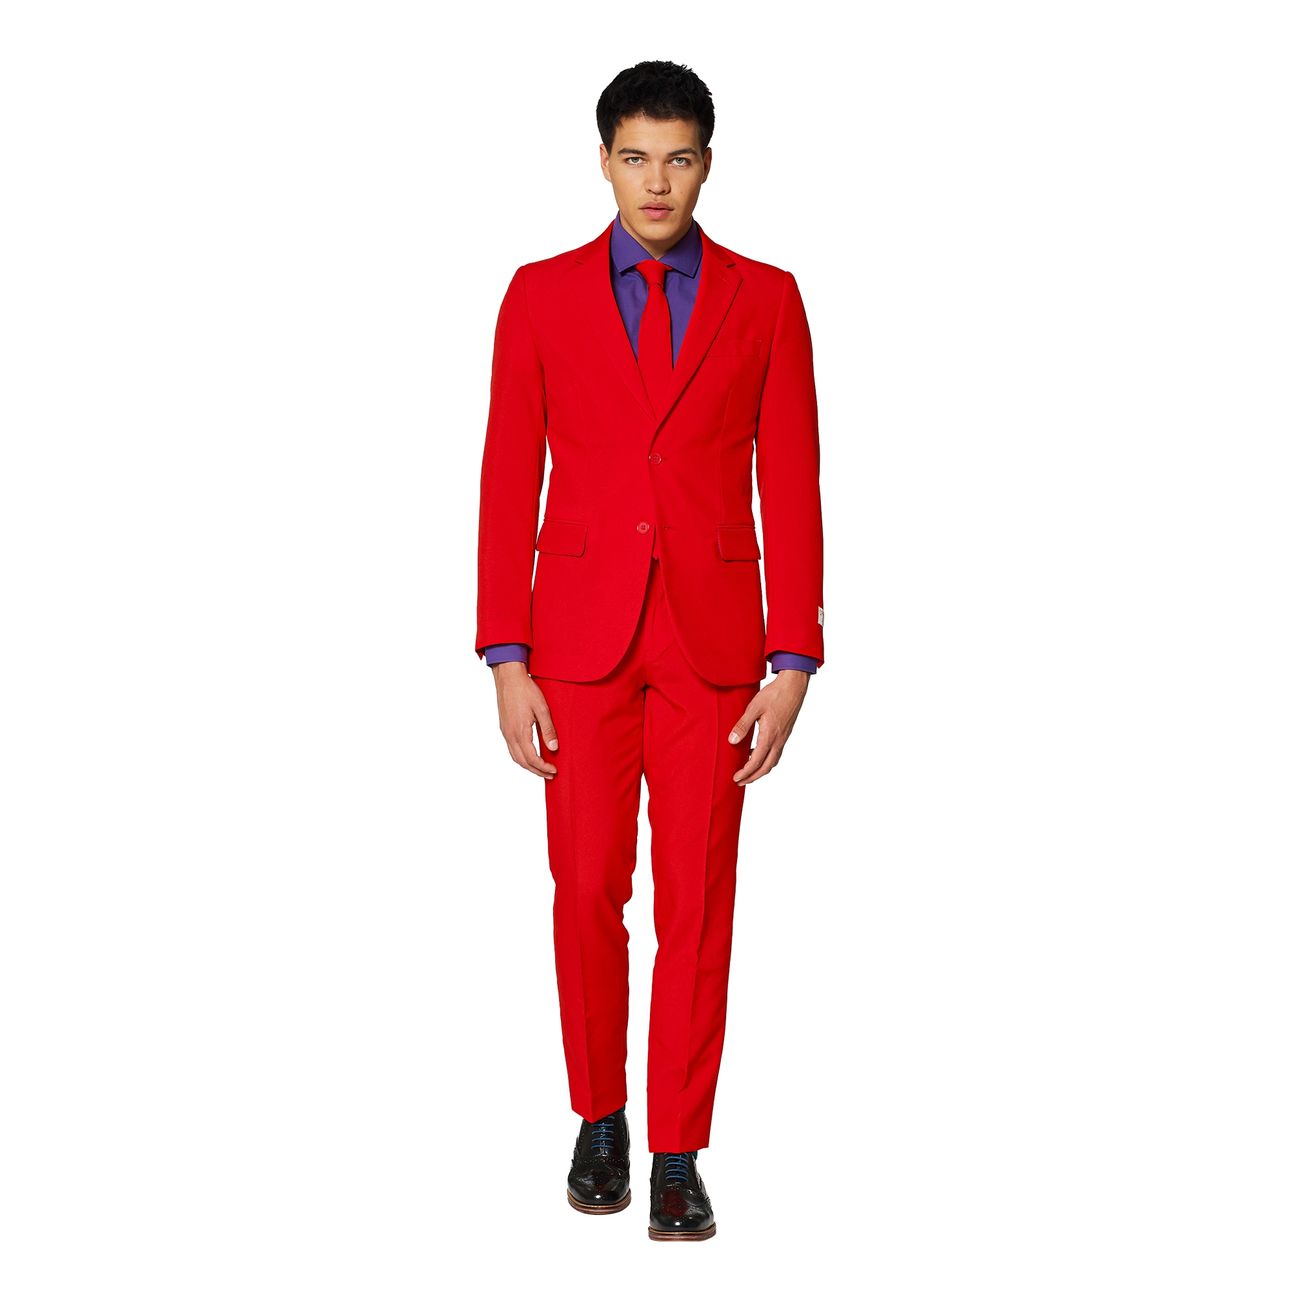 opposuits-red-devil-kostym-16980-11